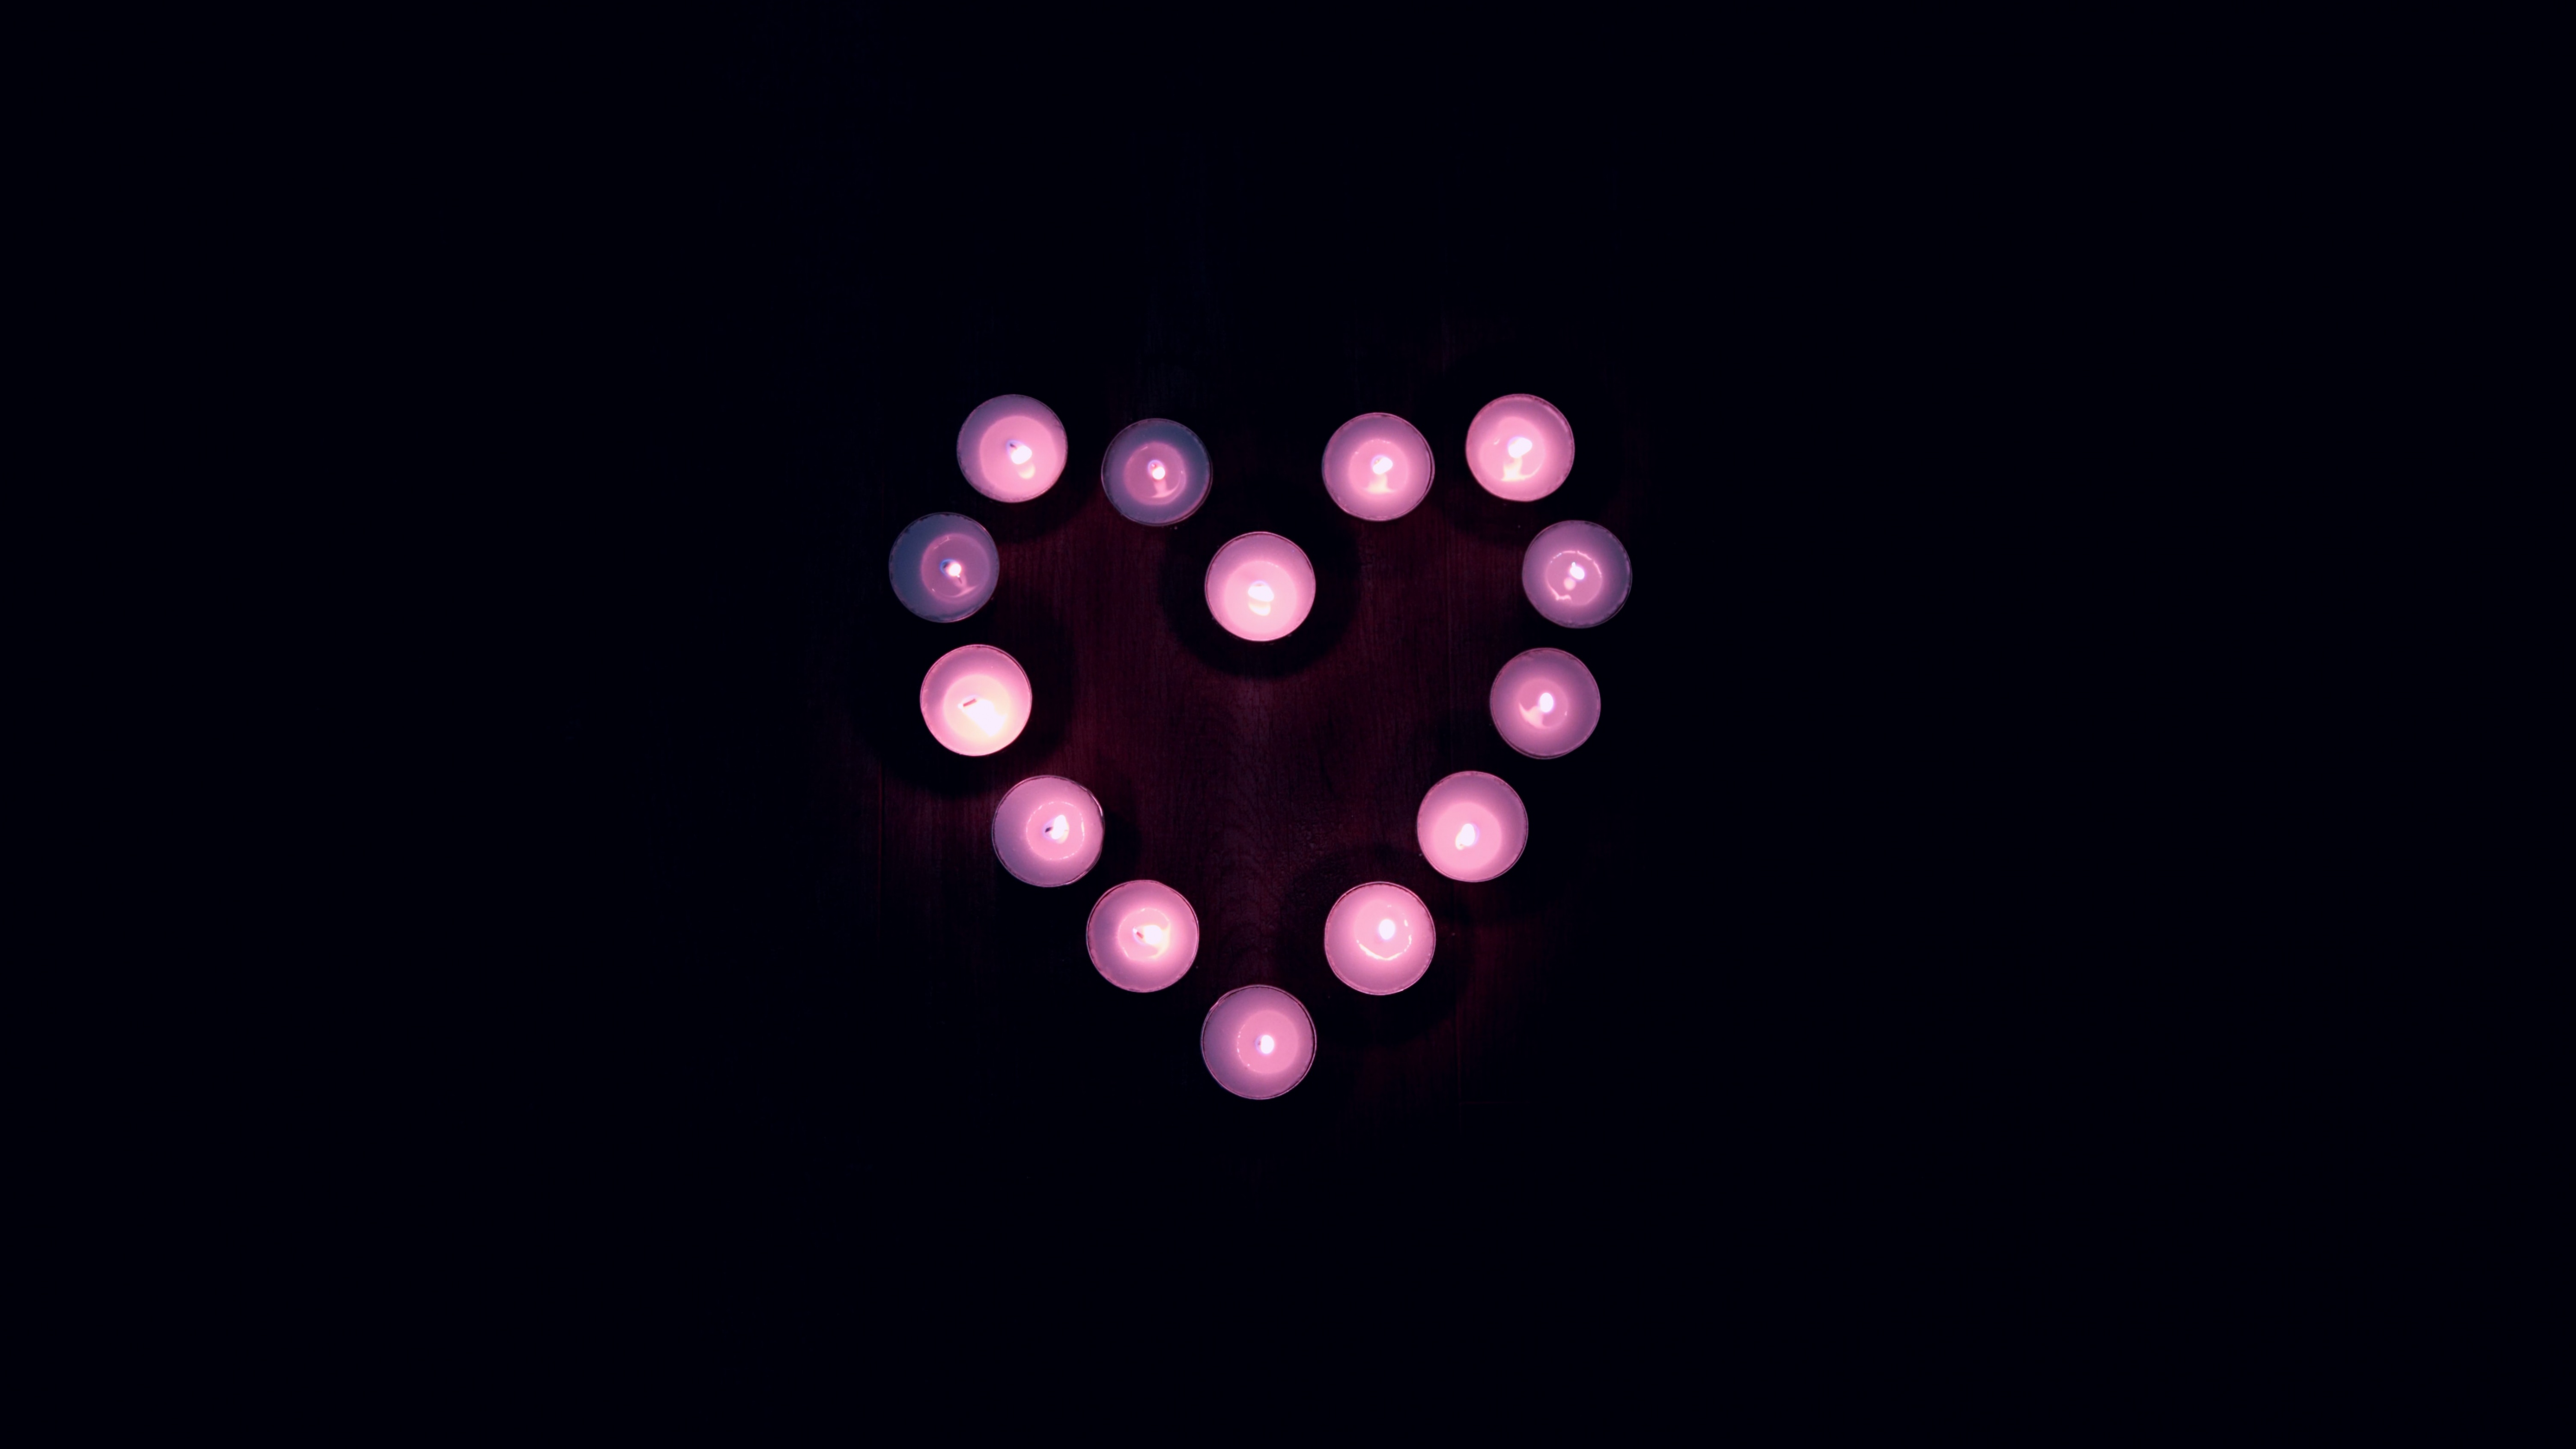 heart lights wallpaper